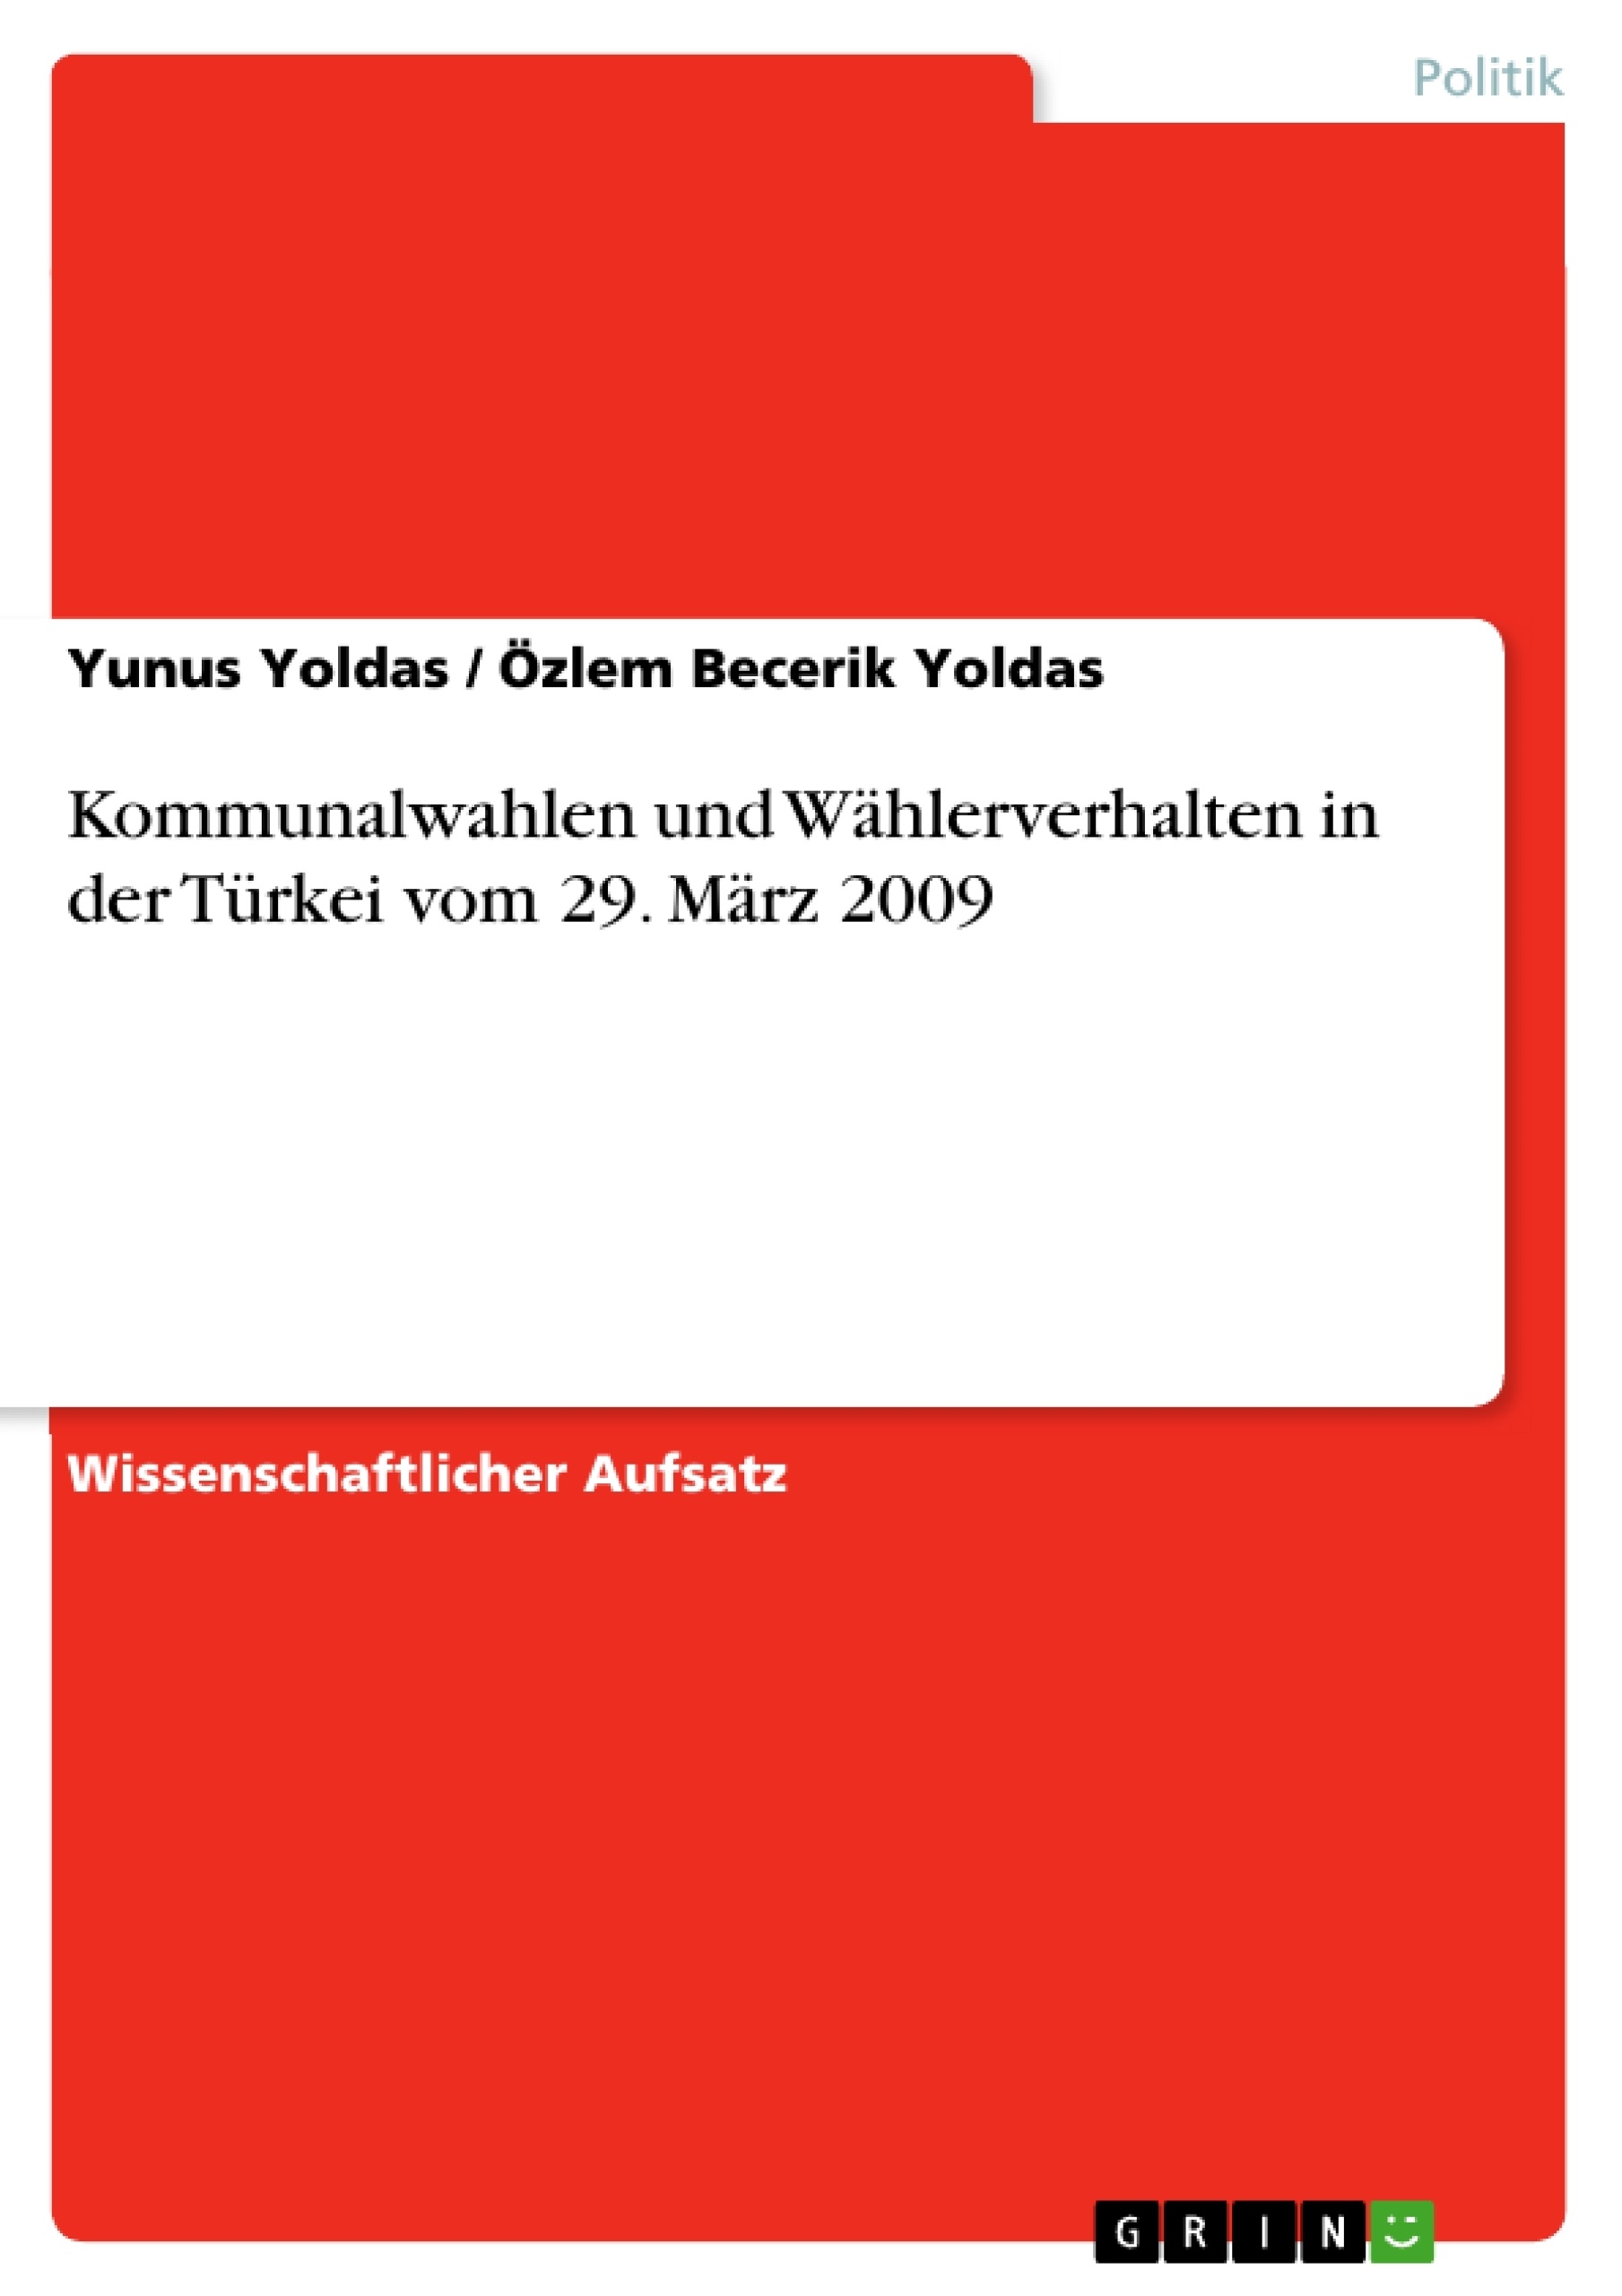 Titre: Kommunalwahlen und Wählerverhalten in der Türkei vom 29. März 2009